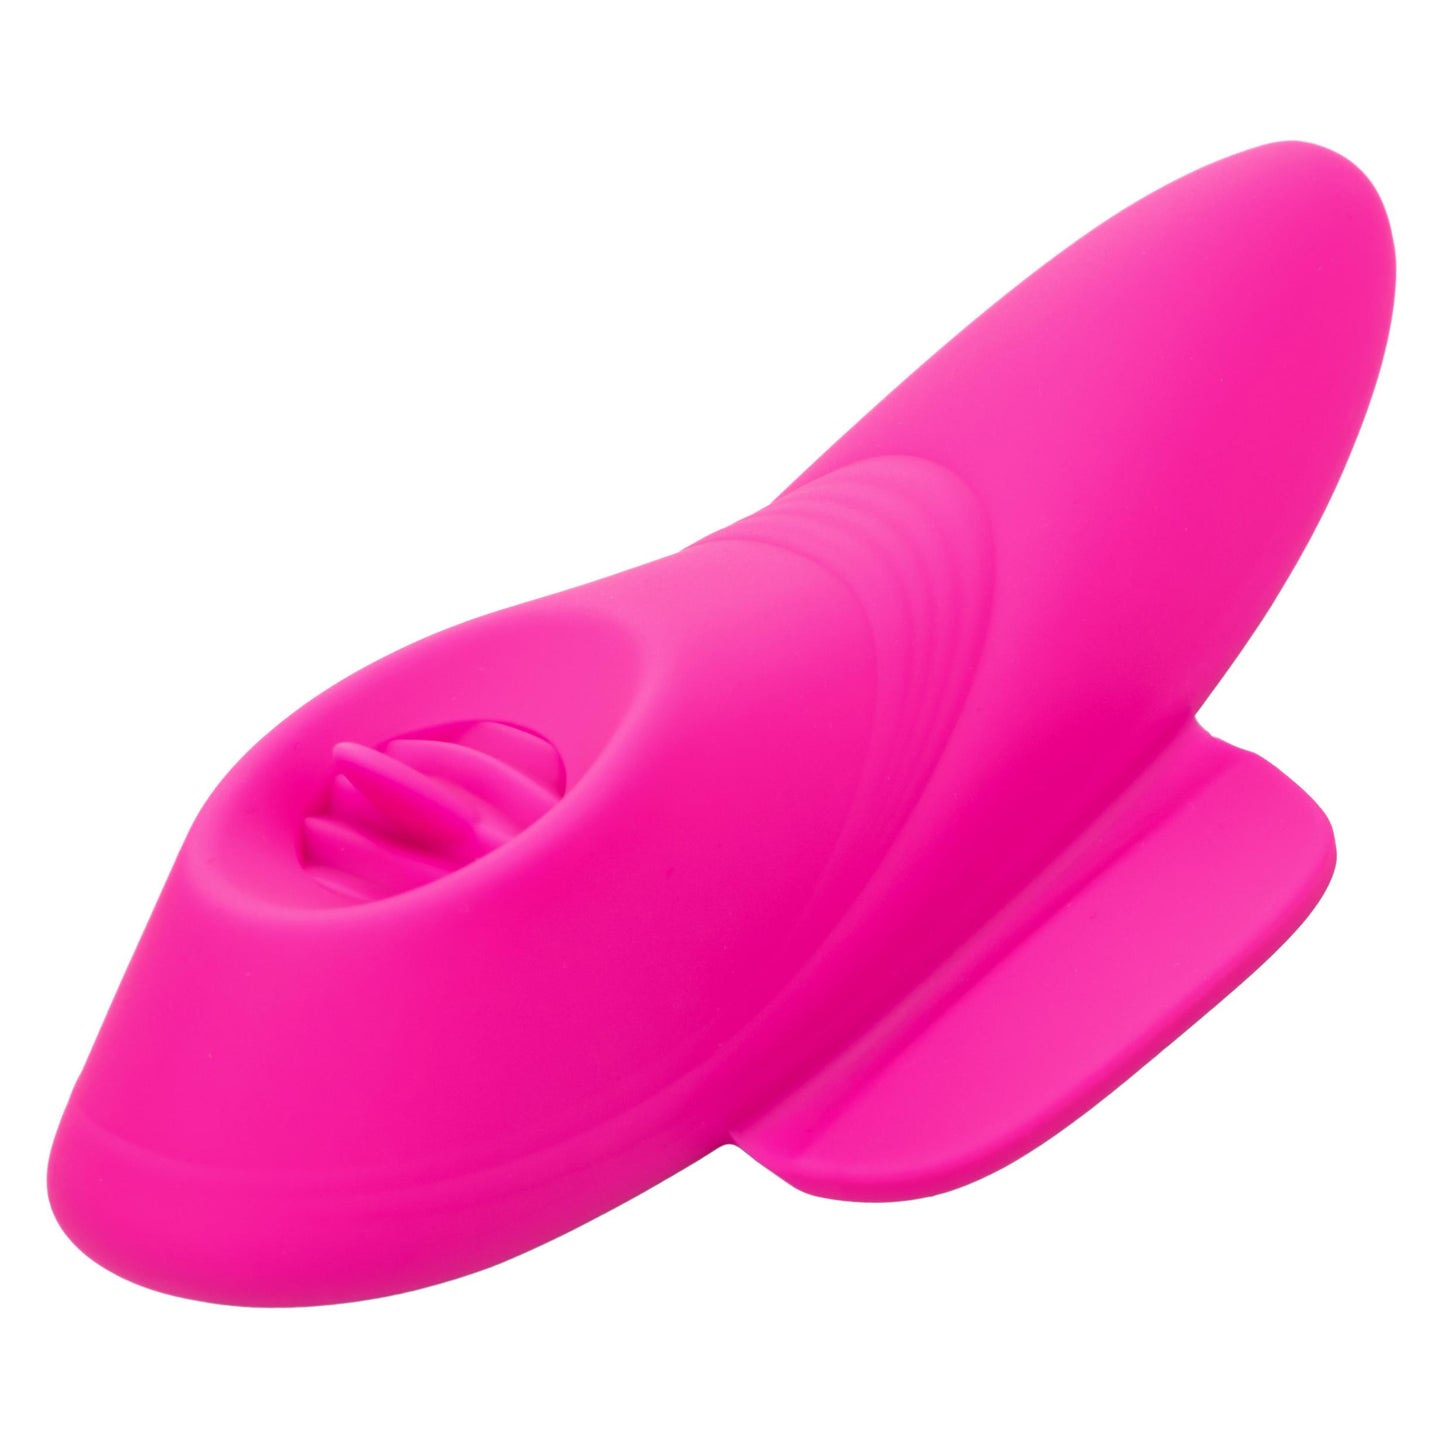 Lock-N-Play Remote Flicker Panty Teaser - Pink